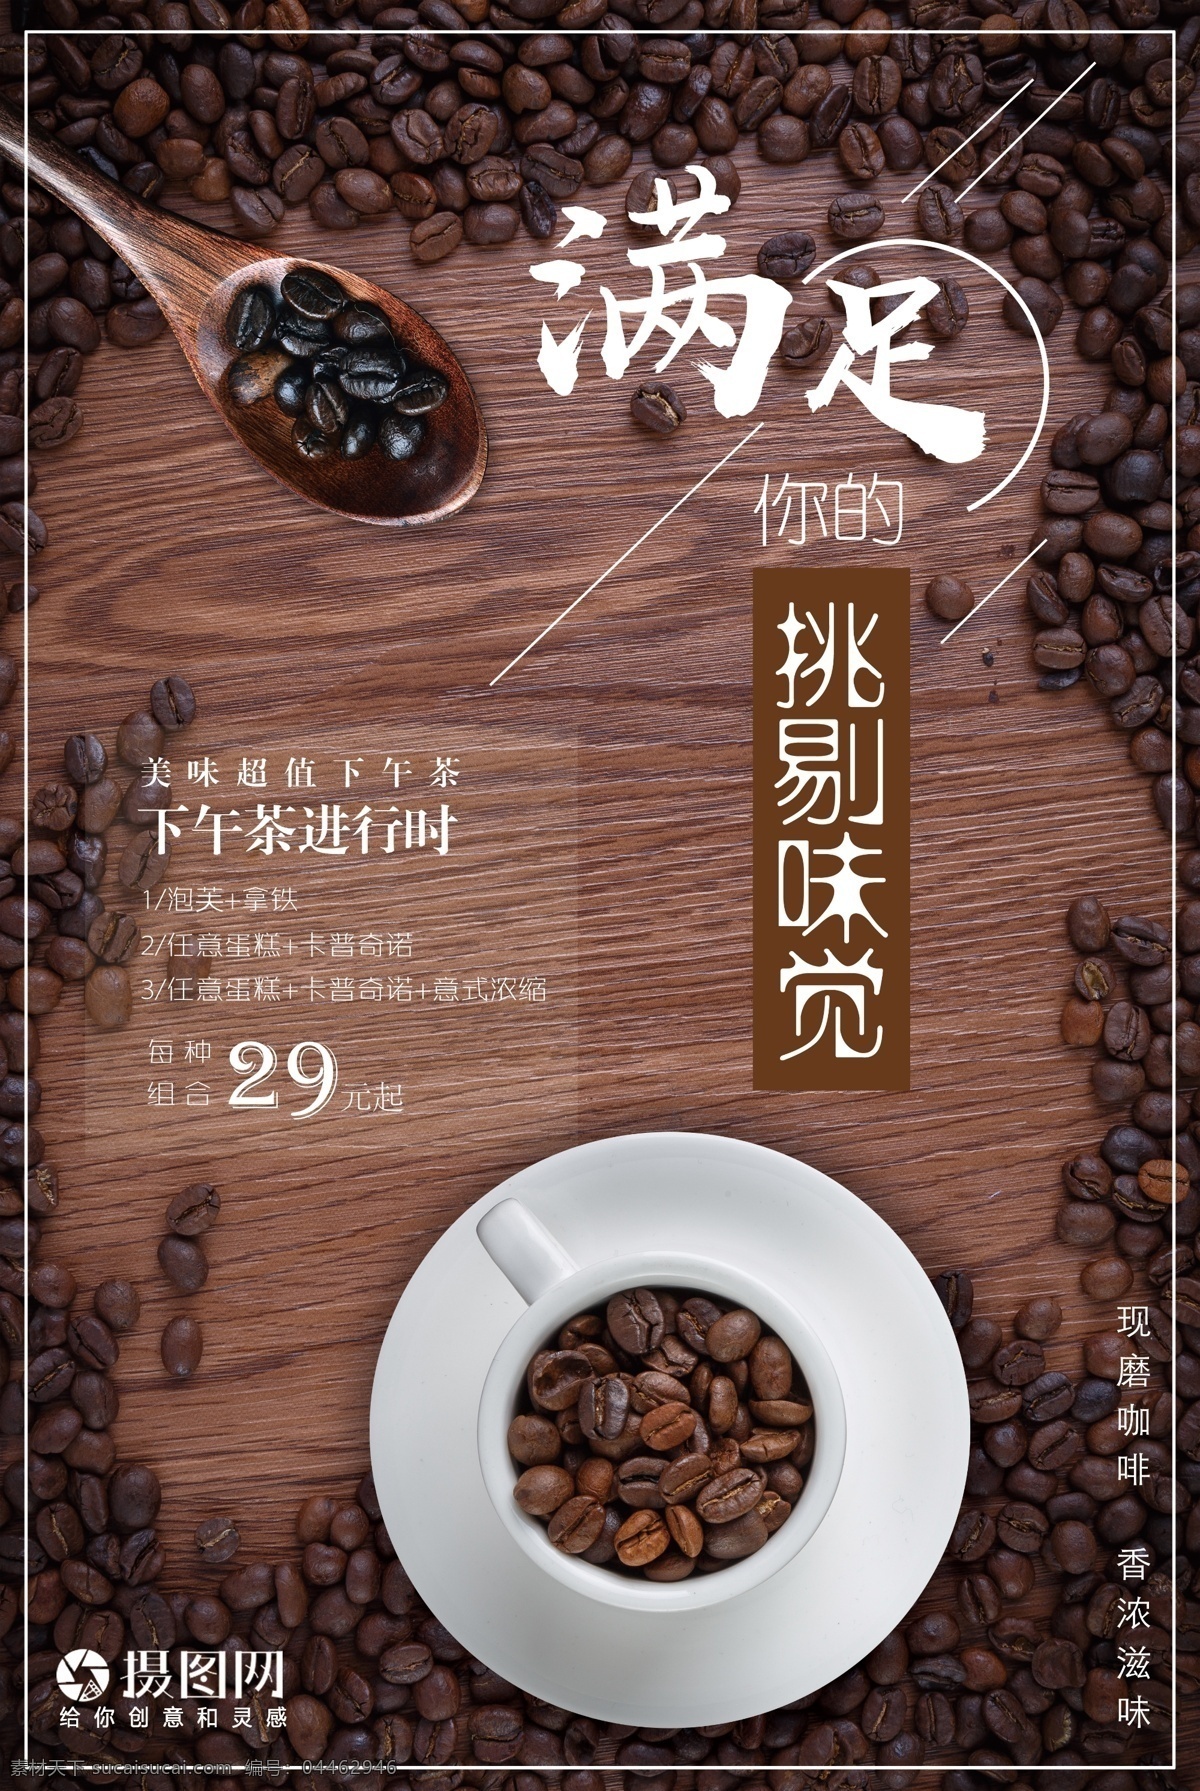 下午 茶 咖啡 海报 下午茶 咖啡豆 饮品 味觉 醇香 下午茶海报